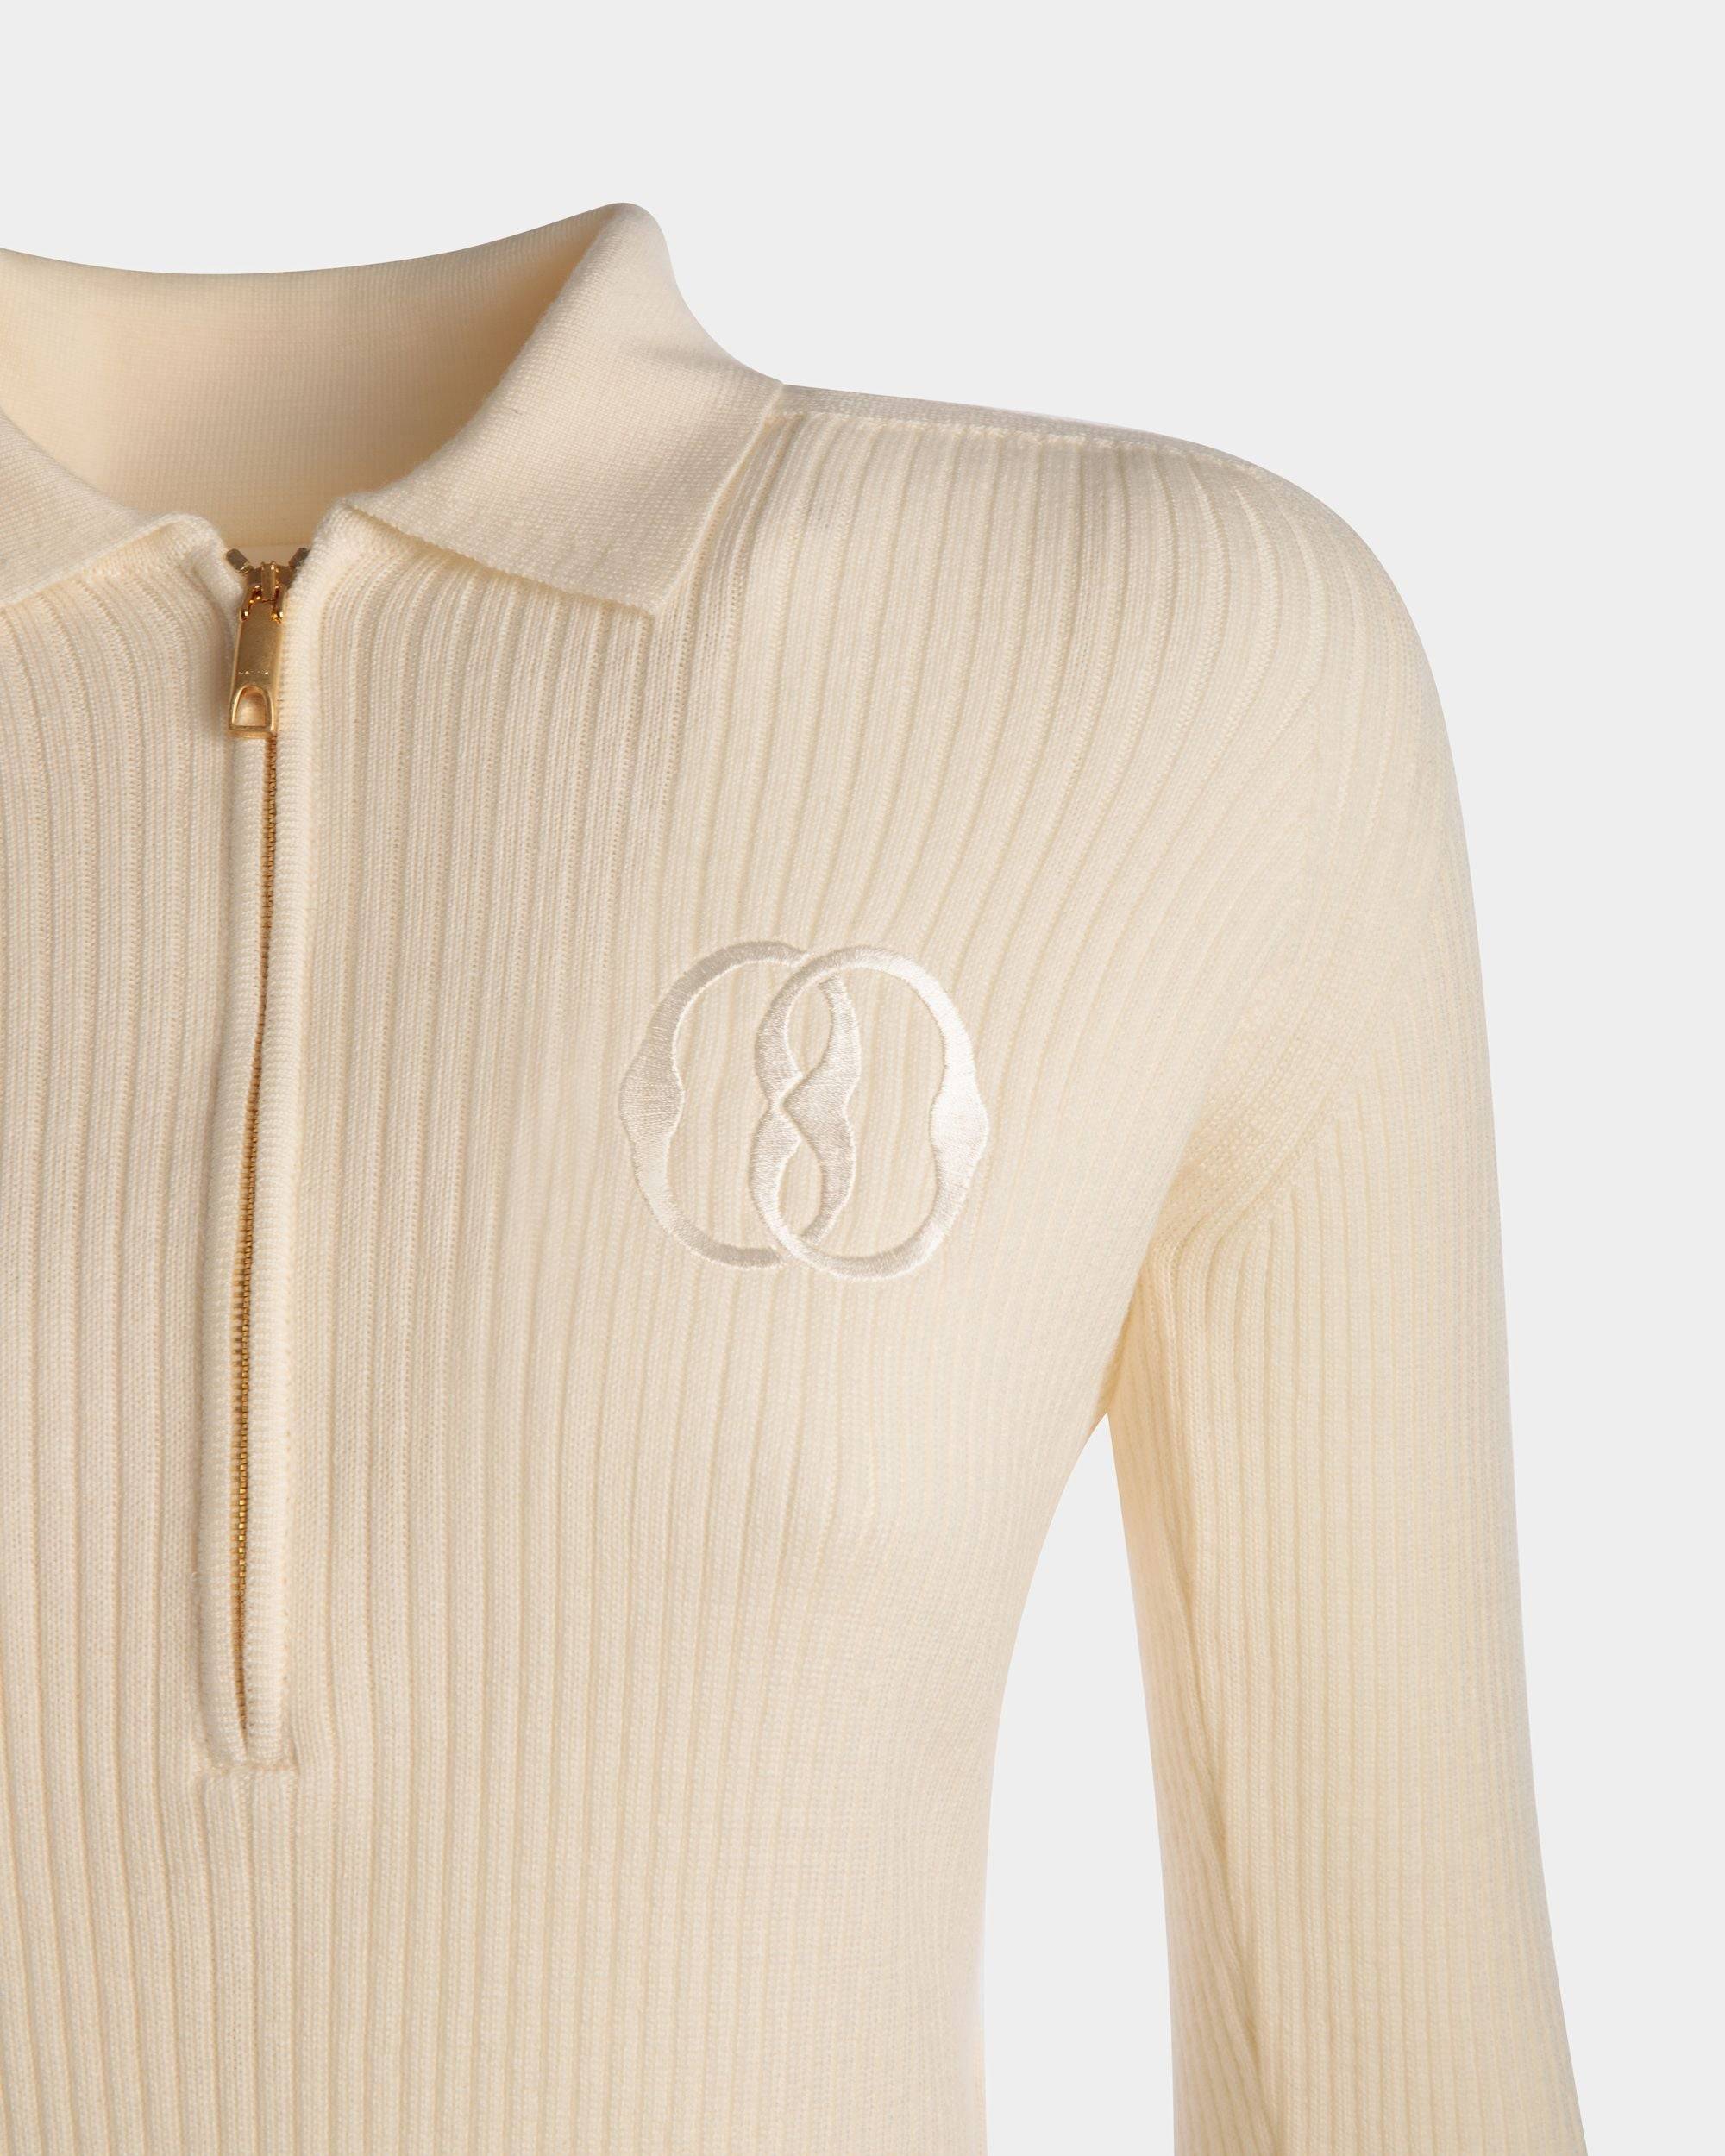 Langarm-Poloshirt | Poloshirt für Damen | Wolle in Elfenbein | Bally | Model getragen Detail